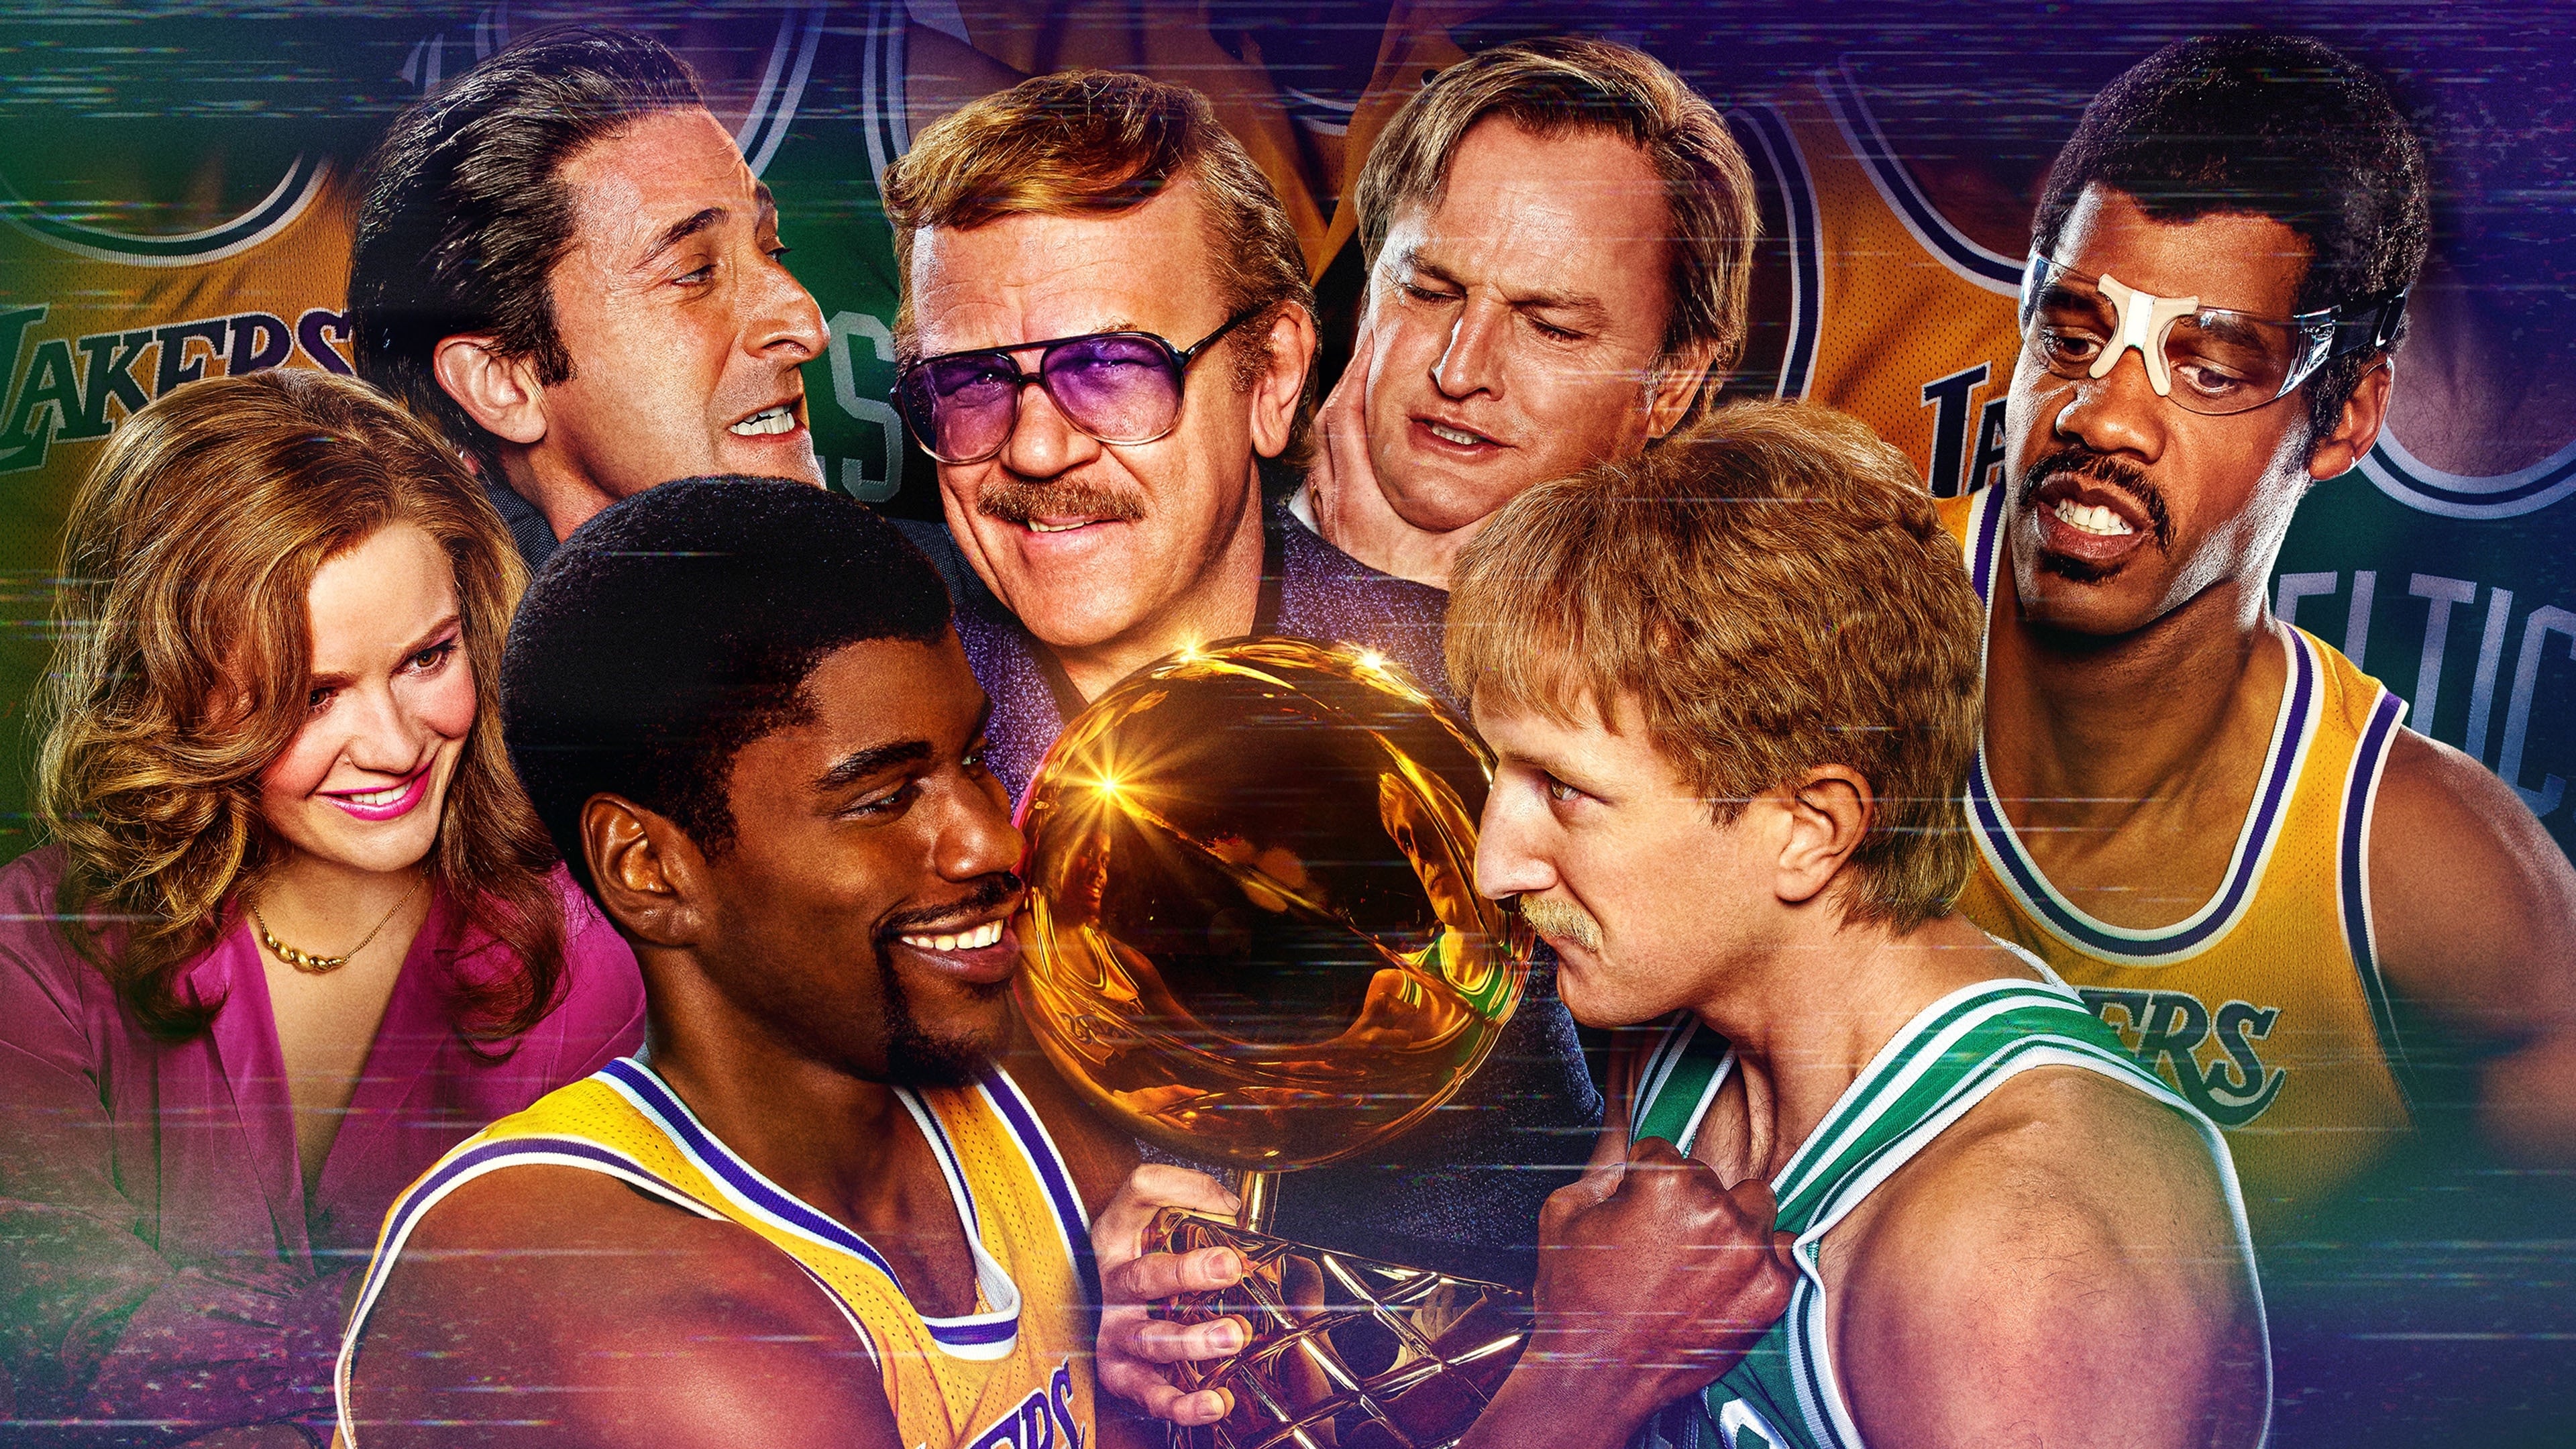 Lakers: Tiempo de ganar